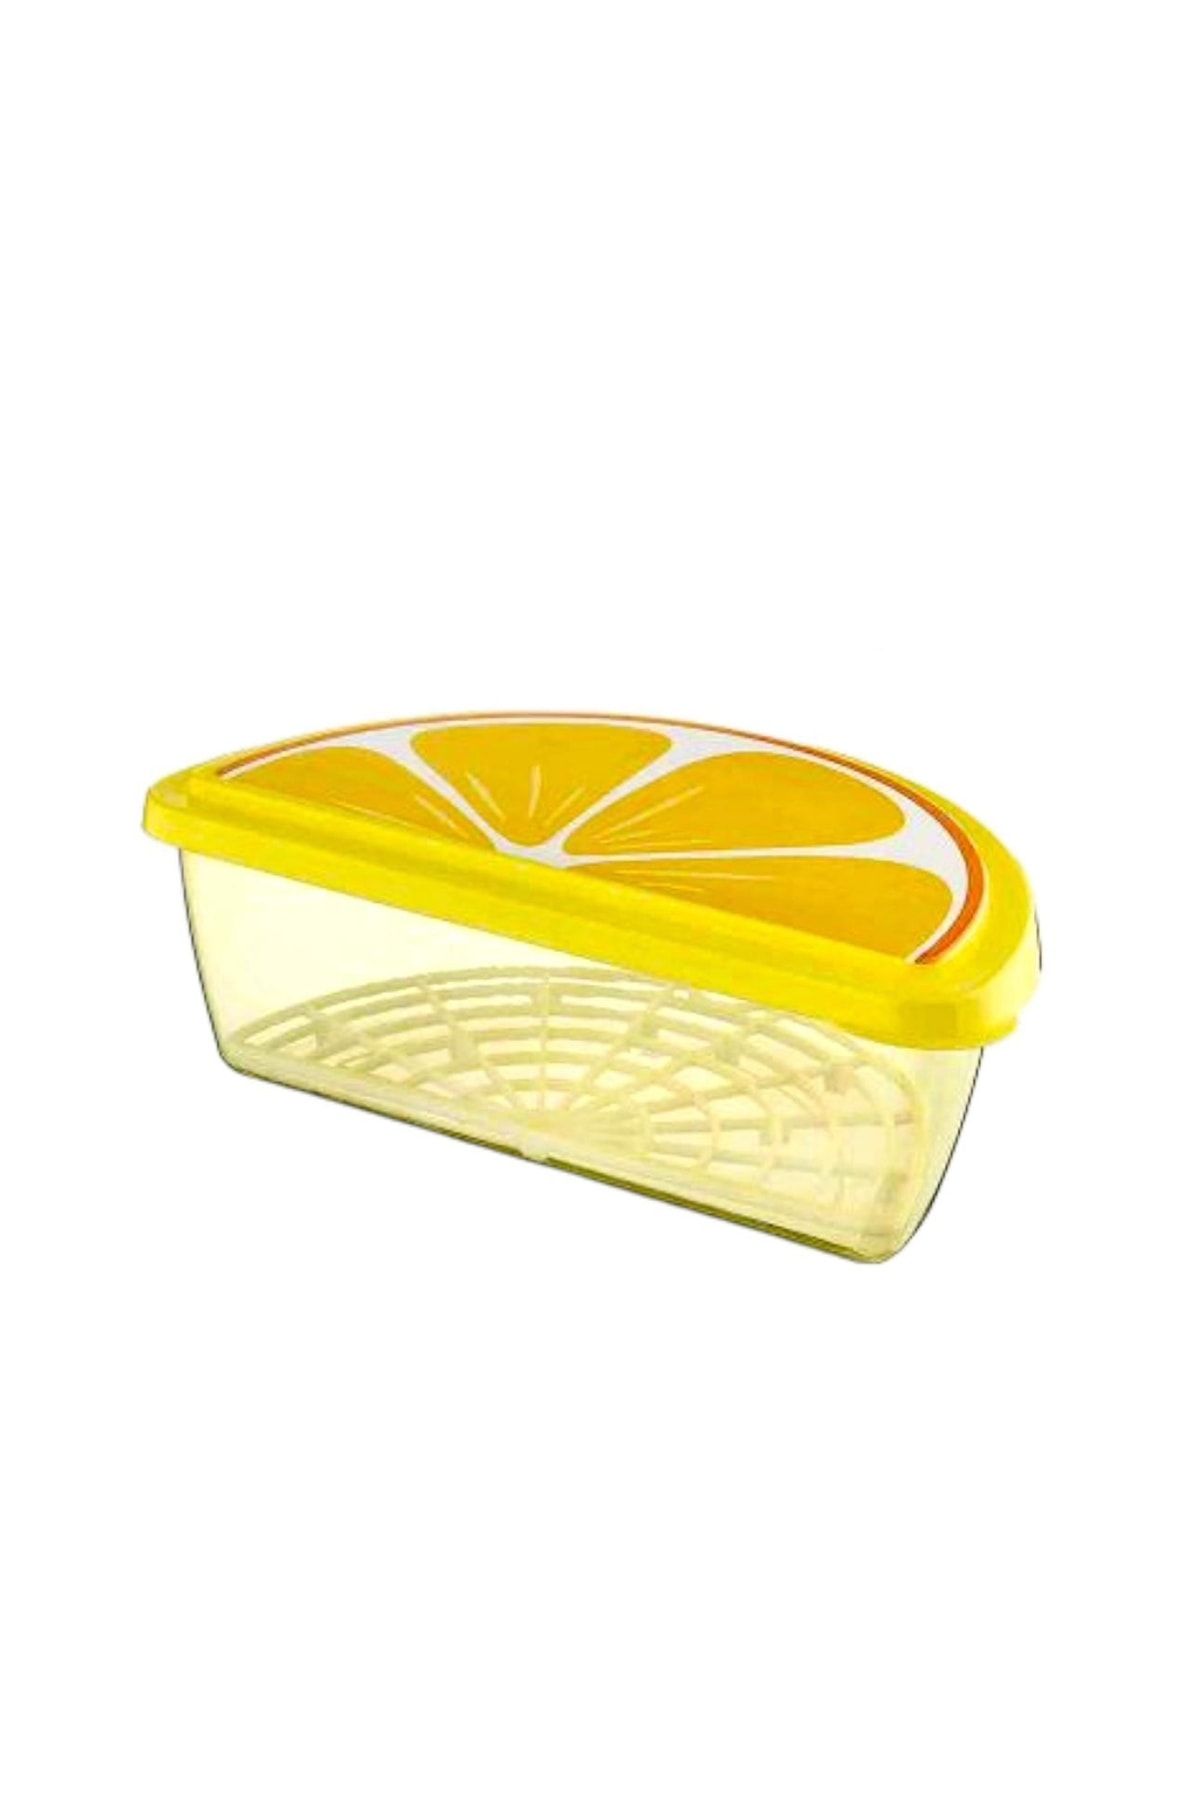 Cosiness Limon Desen Süzgeçli Meyve Saklama Kabı 1.2 Lt